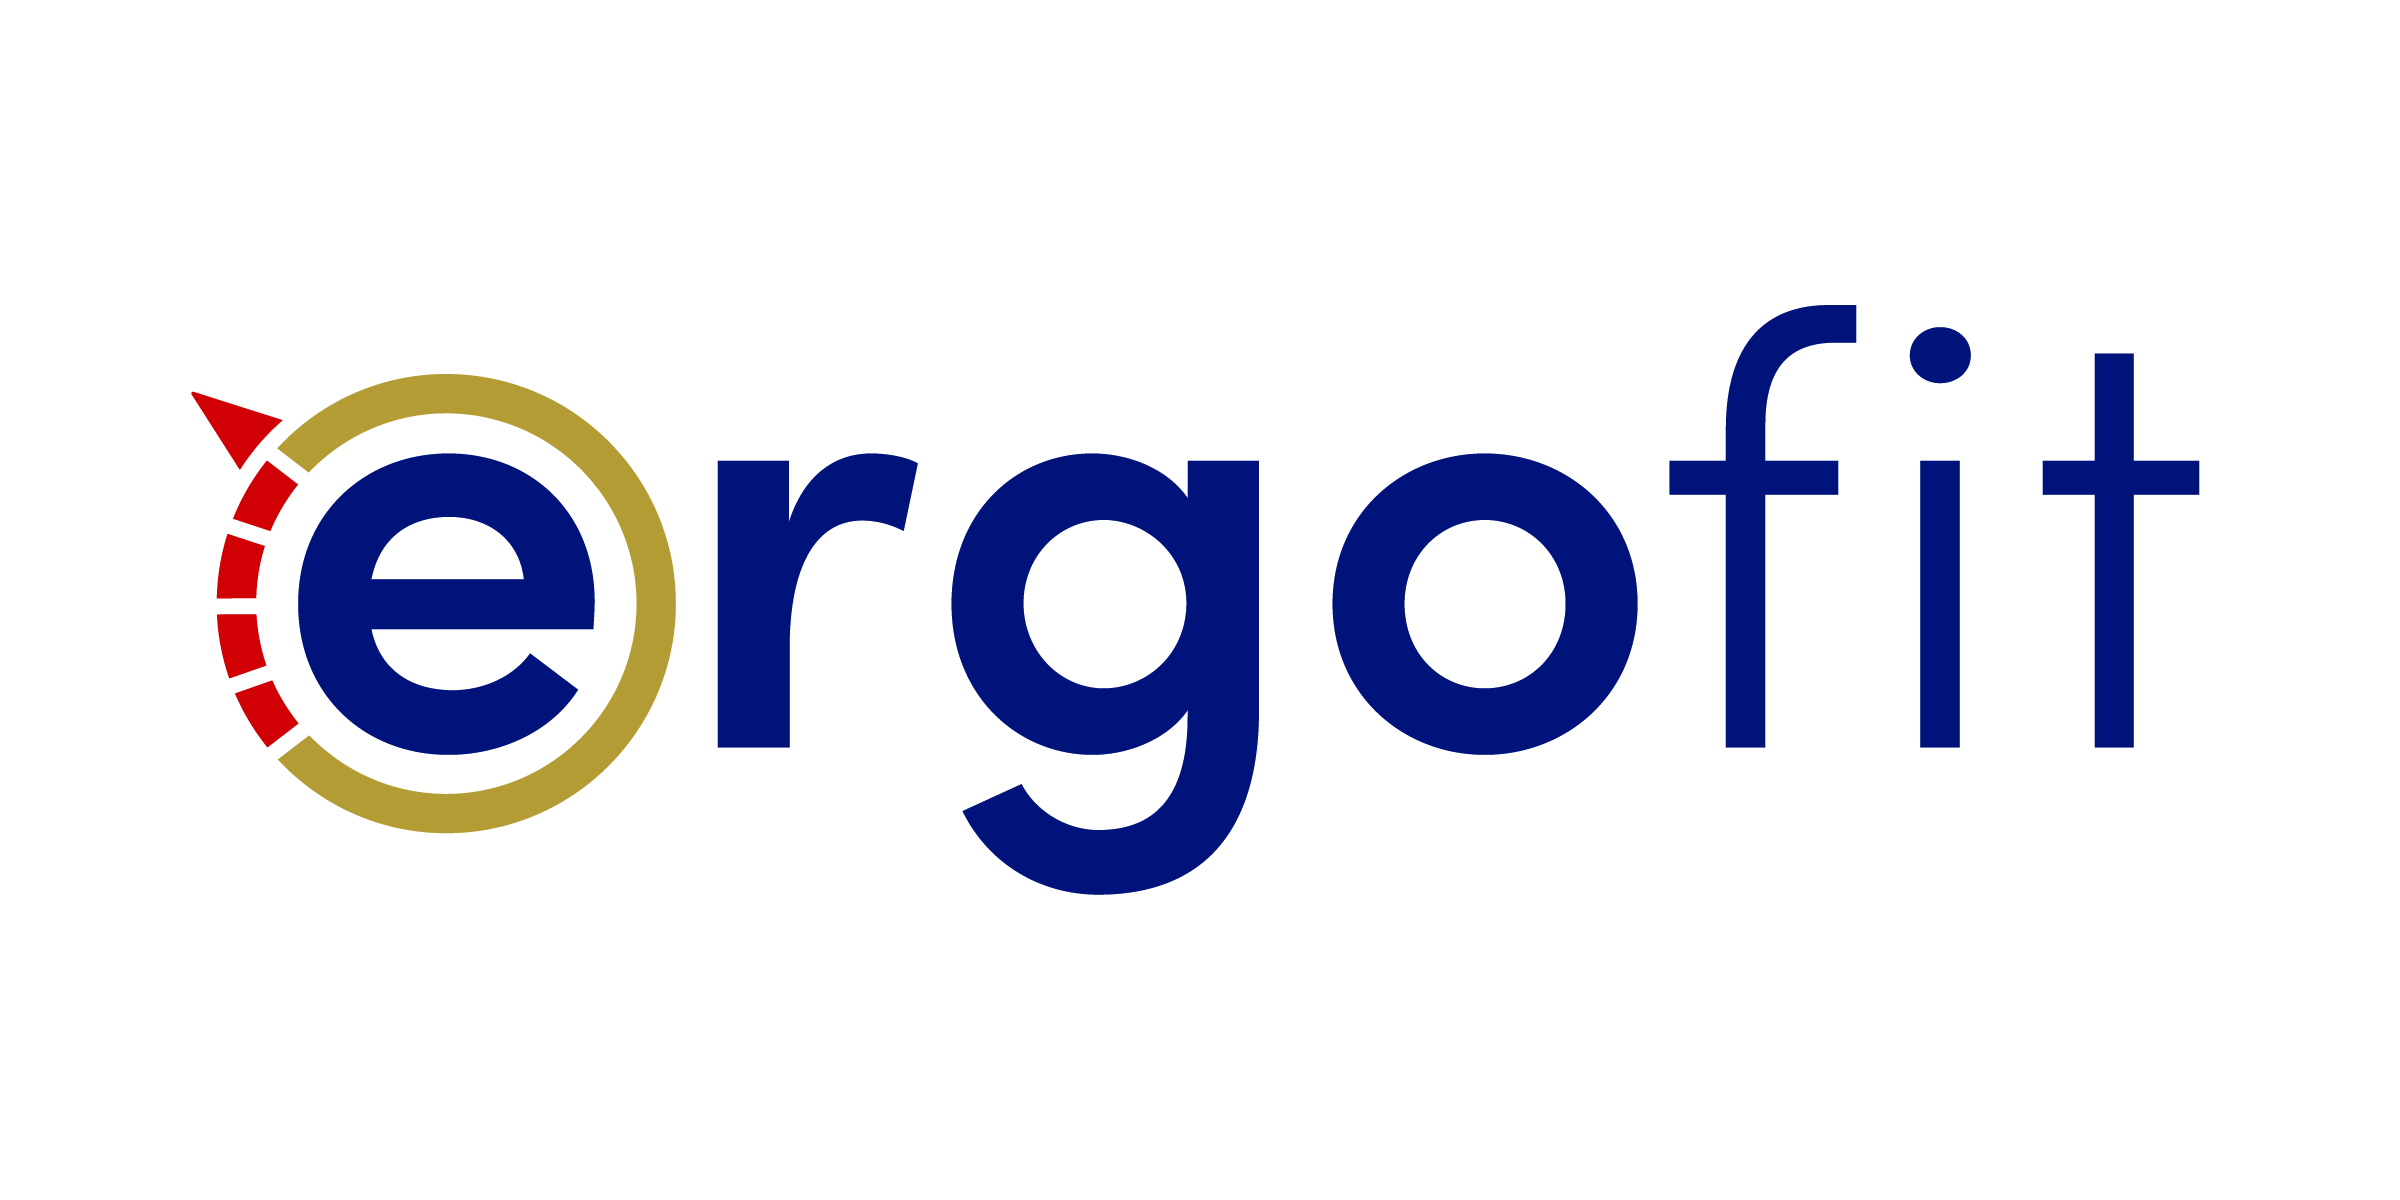 Goergofit.com